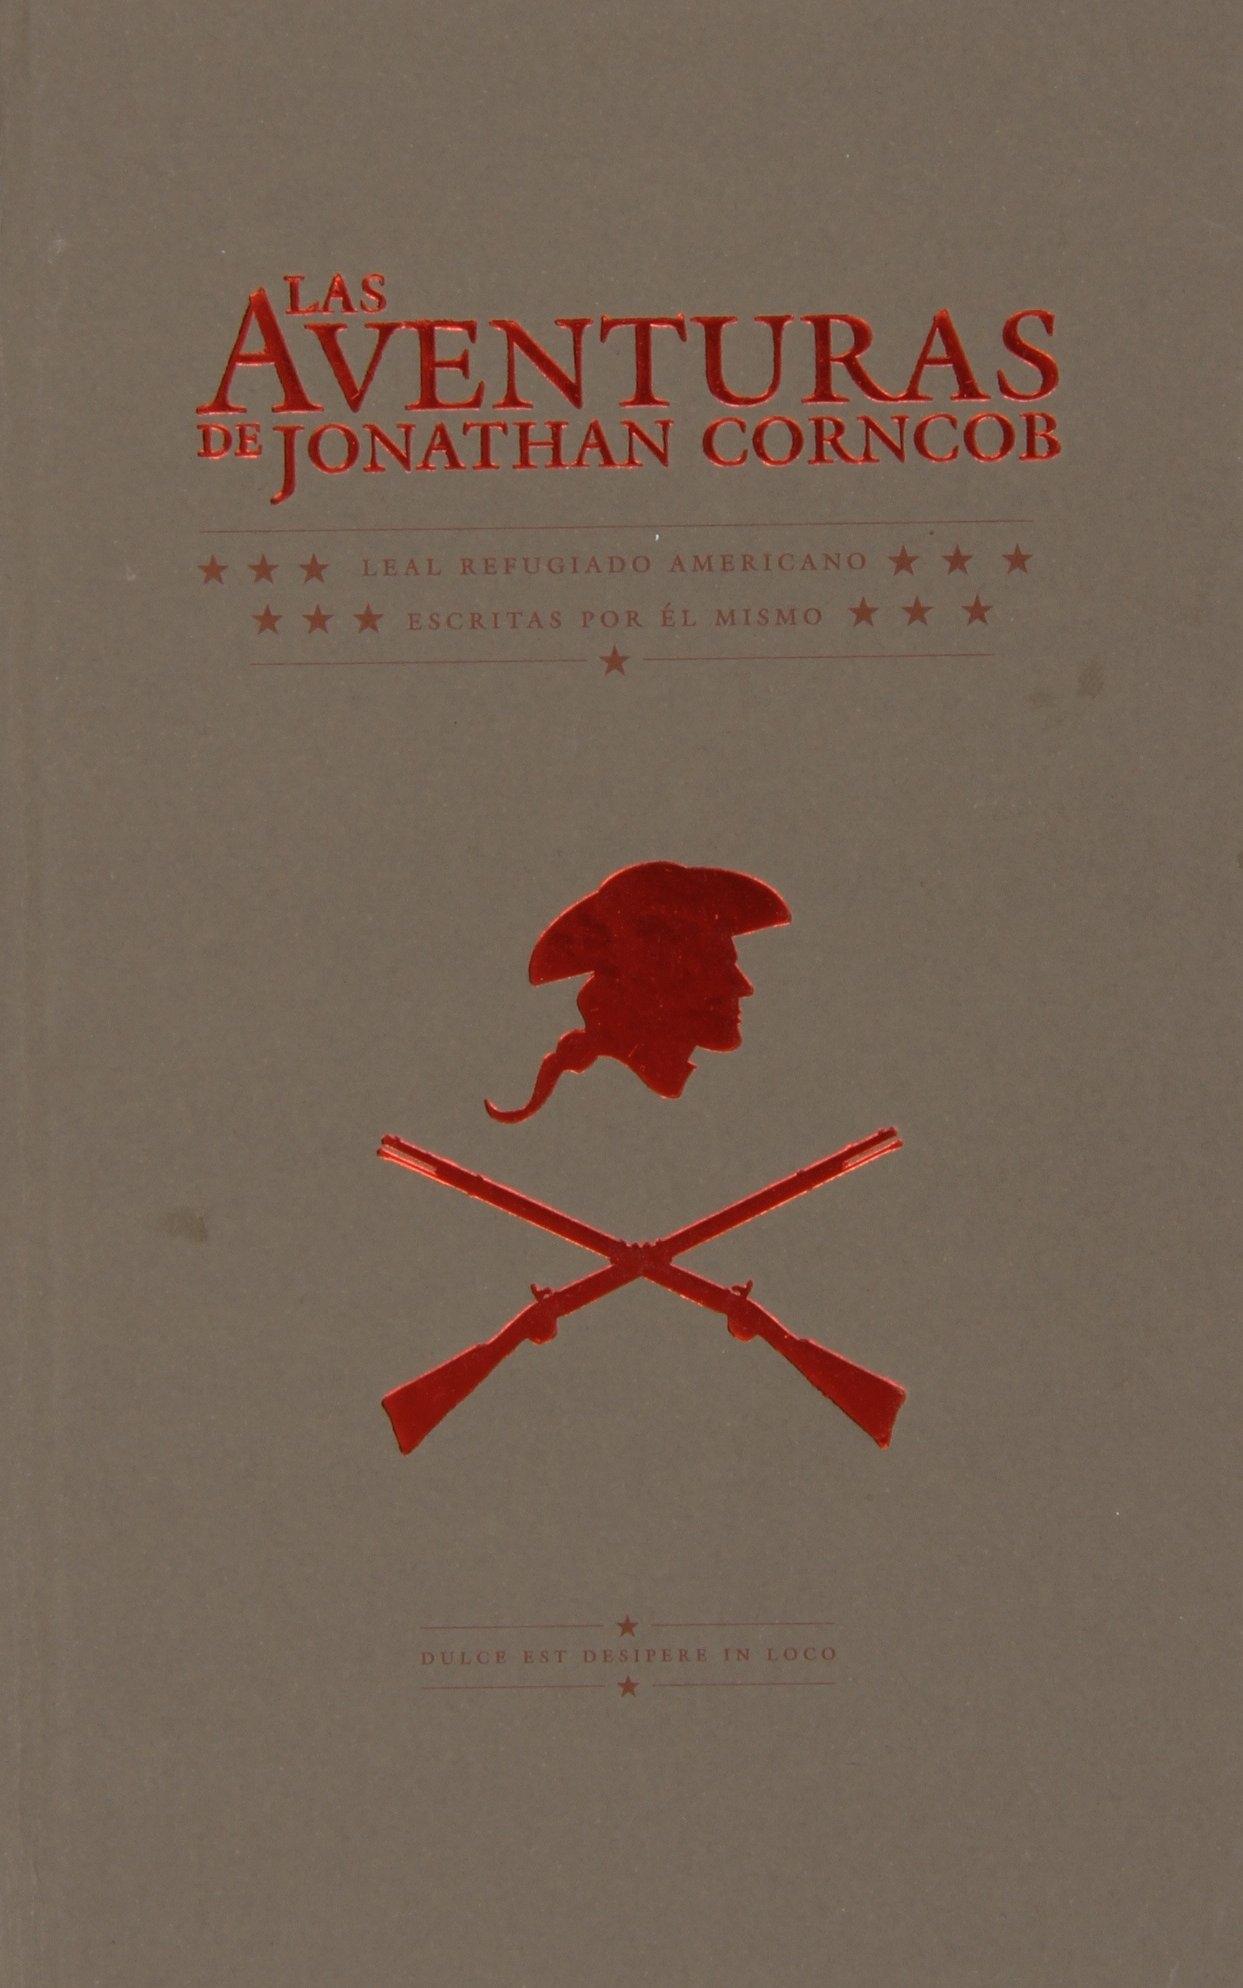 Las Aventuras de Jonathan Corncob "Leal Refugiado Americano, Escritas por Él Mismo". 